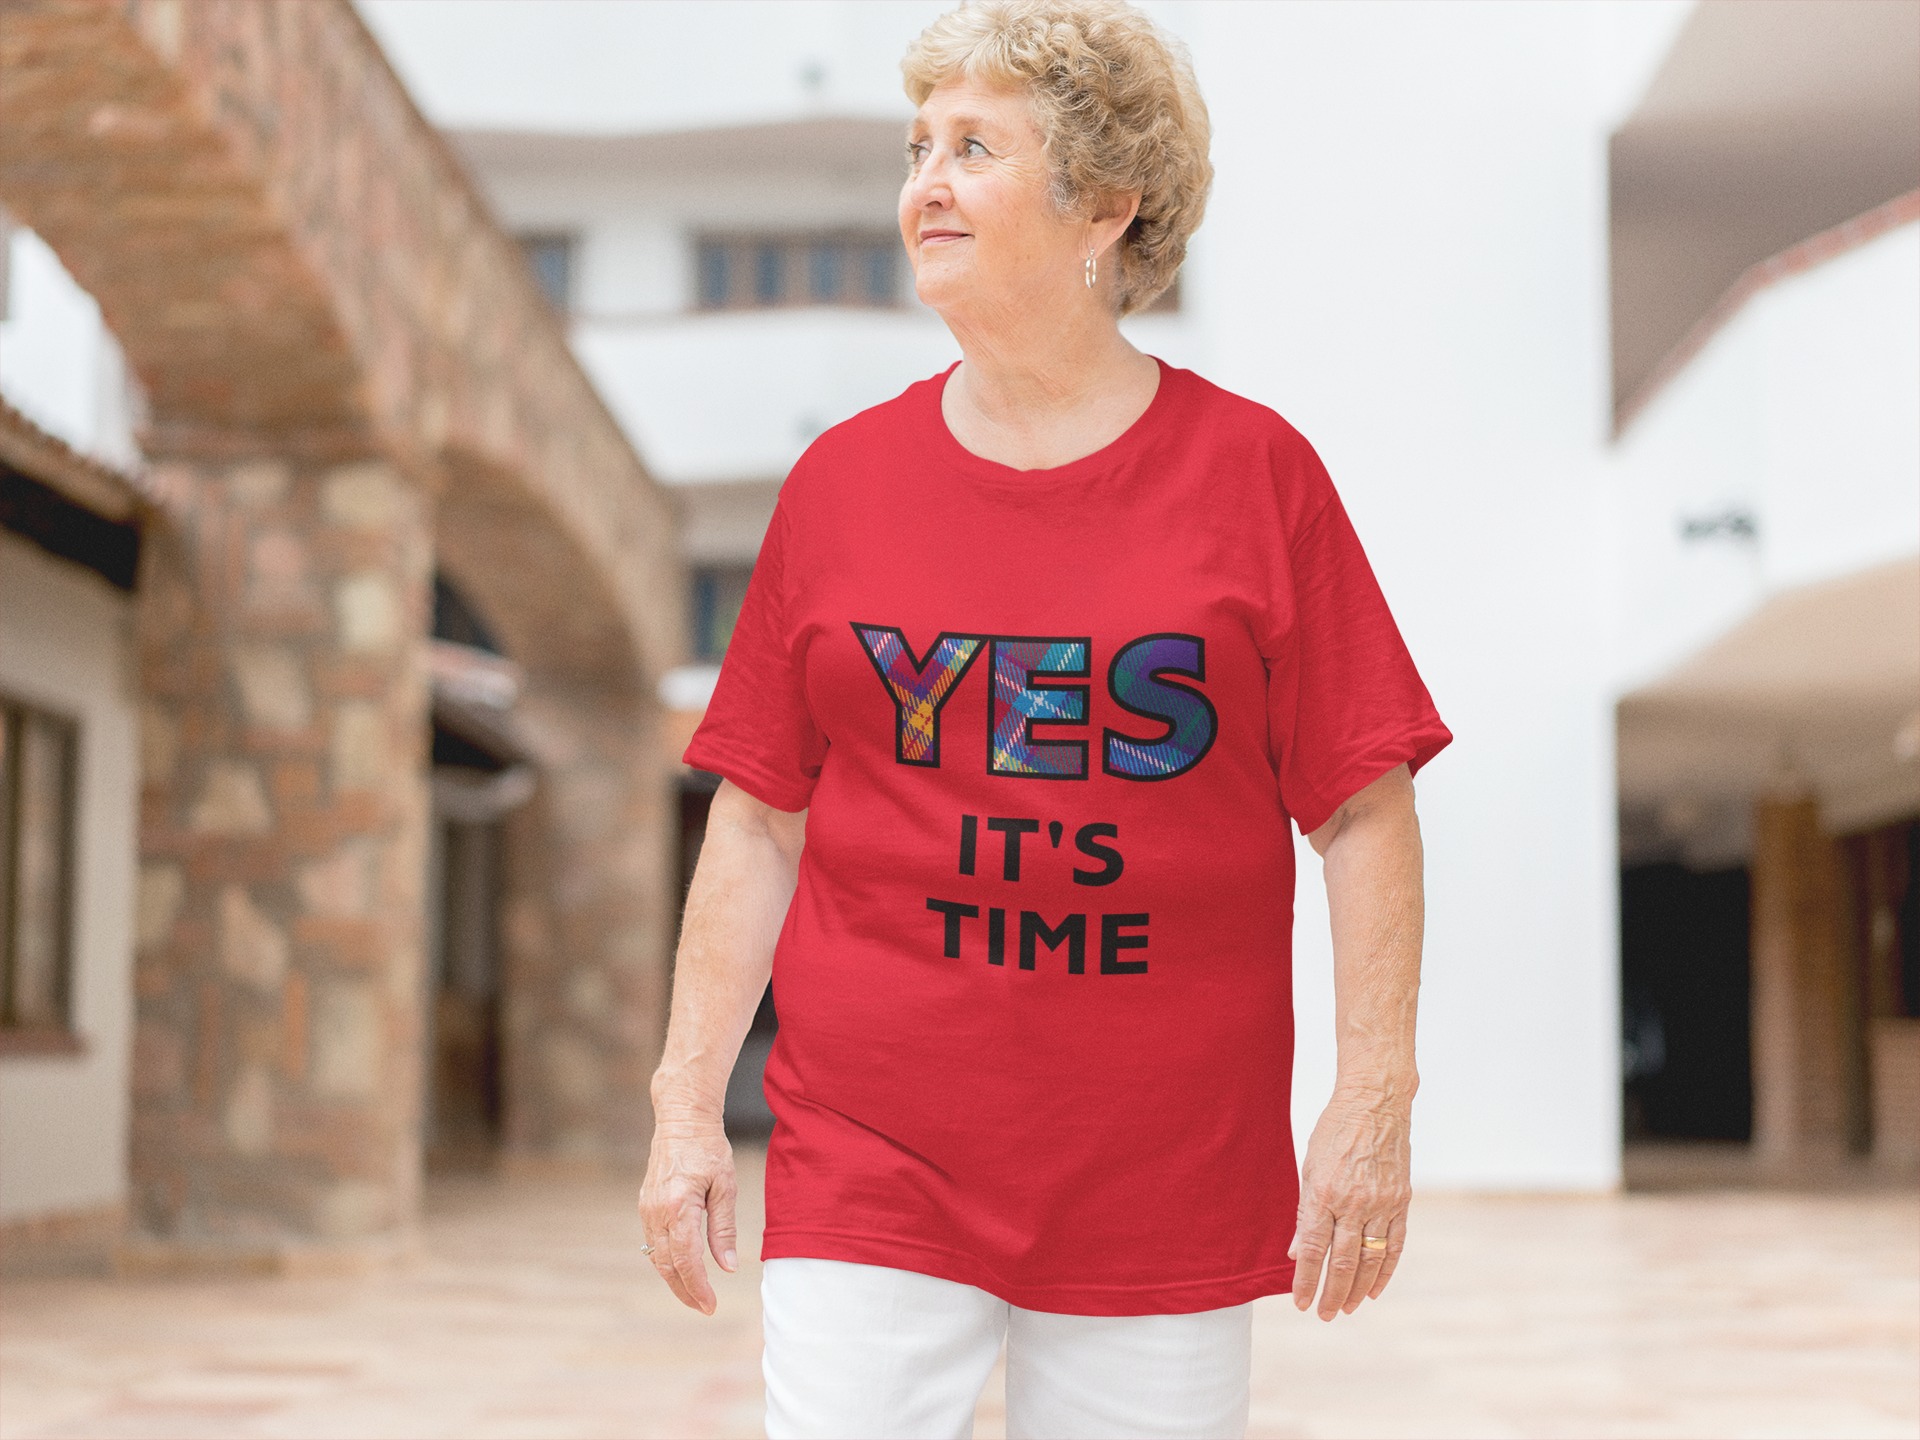 Senior Lady wearing the YES Tartan red t-shirt